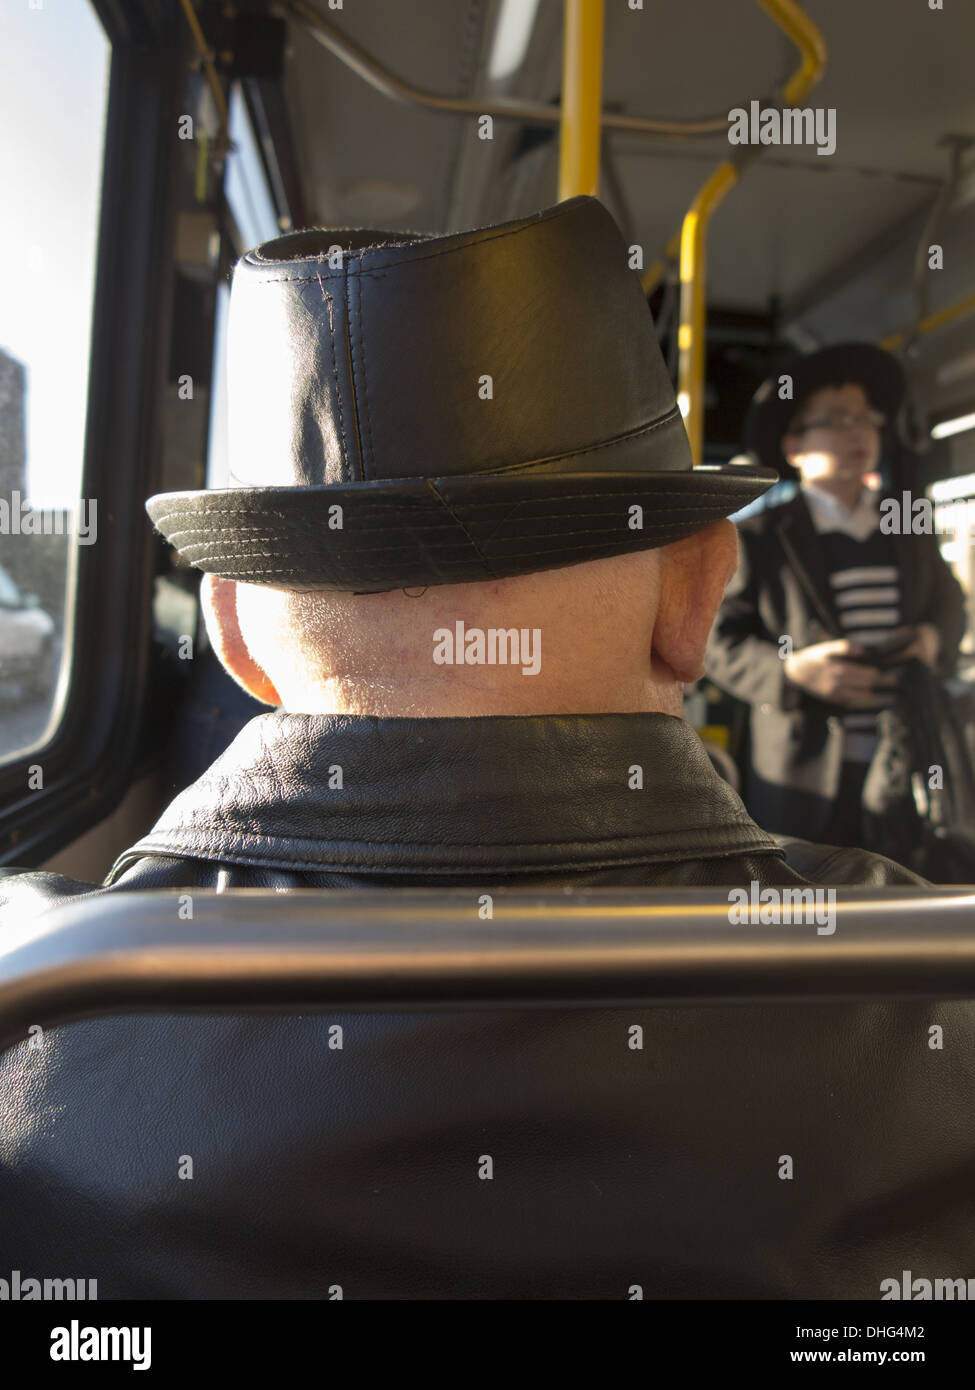 Man on a bus, Coney Island Avenue, Brooklyn, NY. Stock Photo